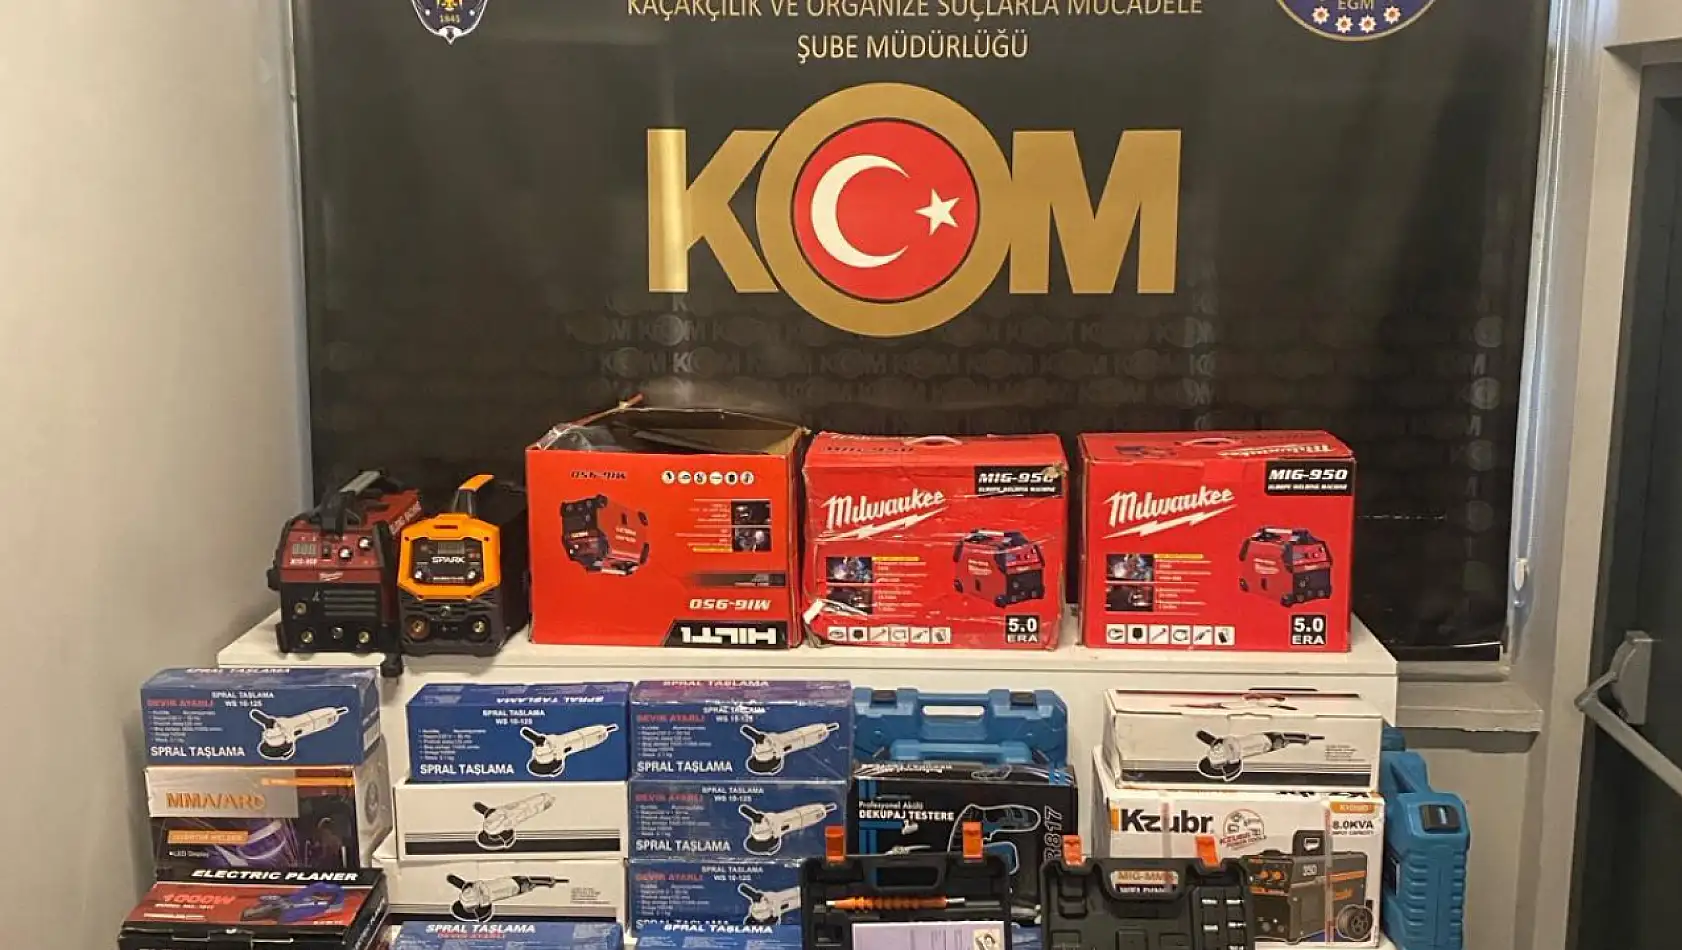 Kayseri'de elektronik sigaradan sahte paraya kaçakçılık operasyonu